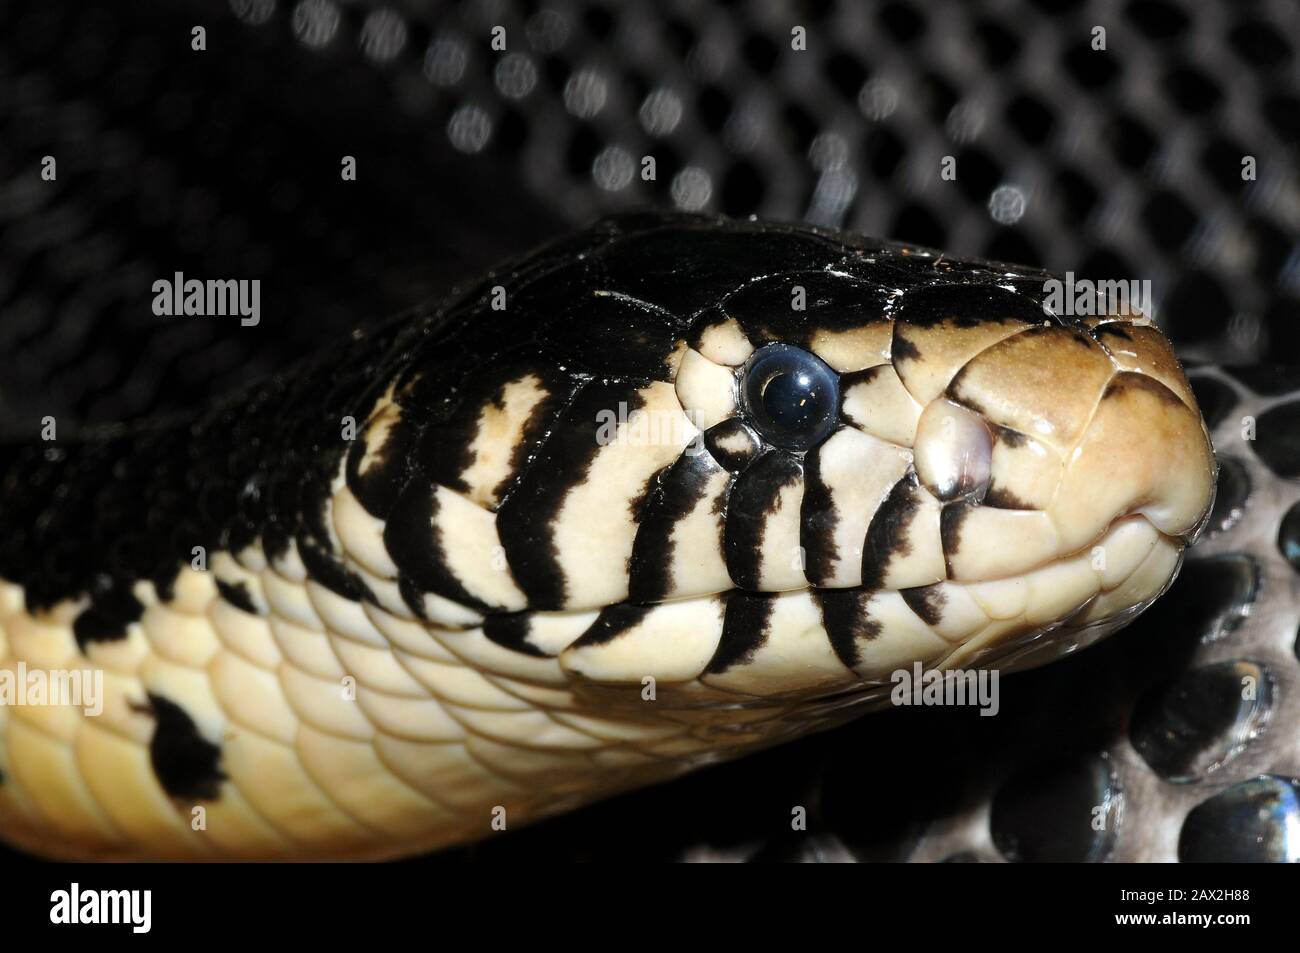 Waldkobra, schwarze Kobra, schwarz-weiß-lippige Kobra, Schwarzweiße Hutschlange, Naja melanoleuca, erdei kobra Stockfoto